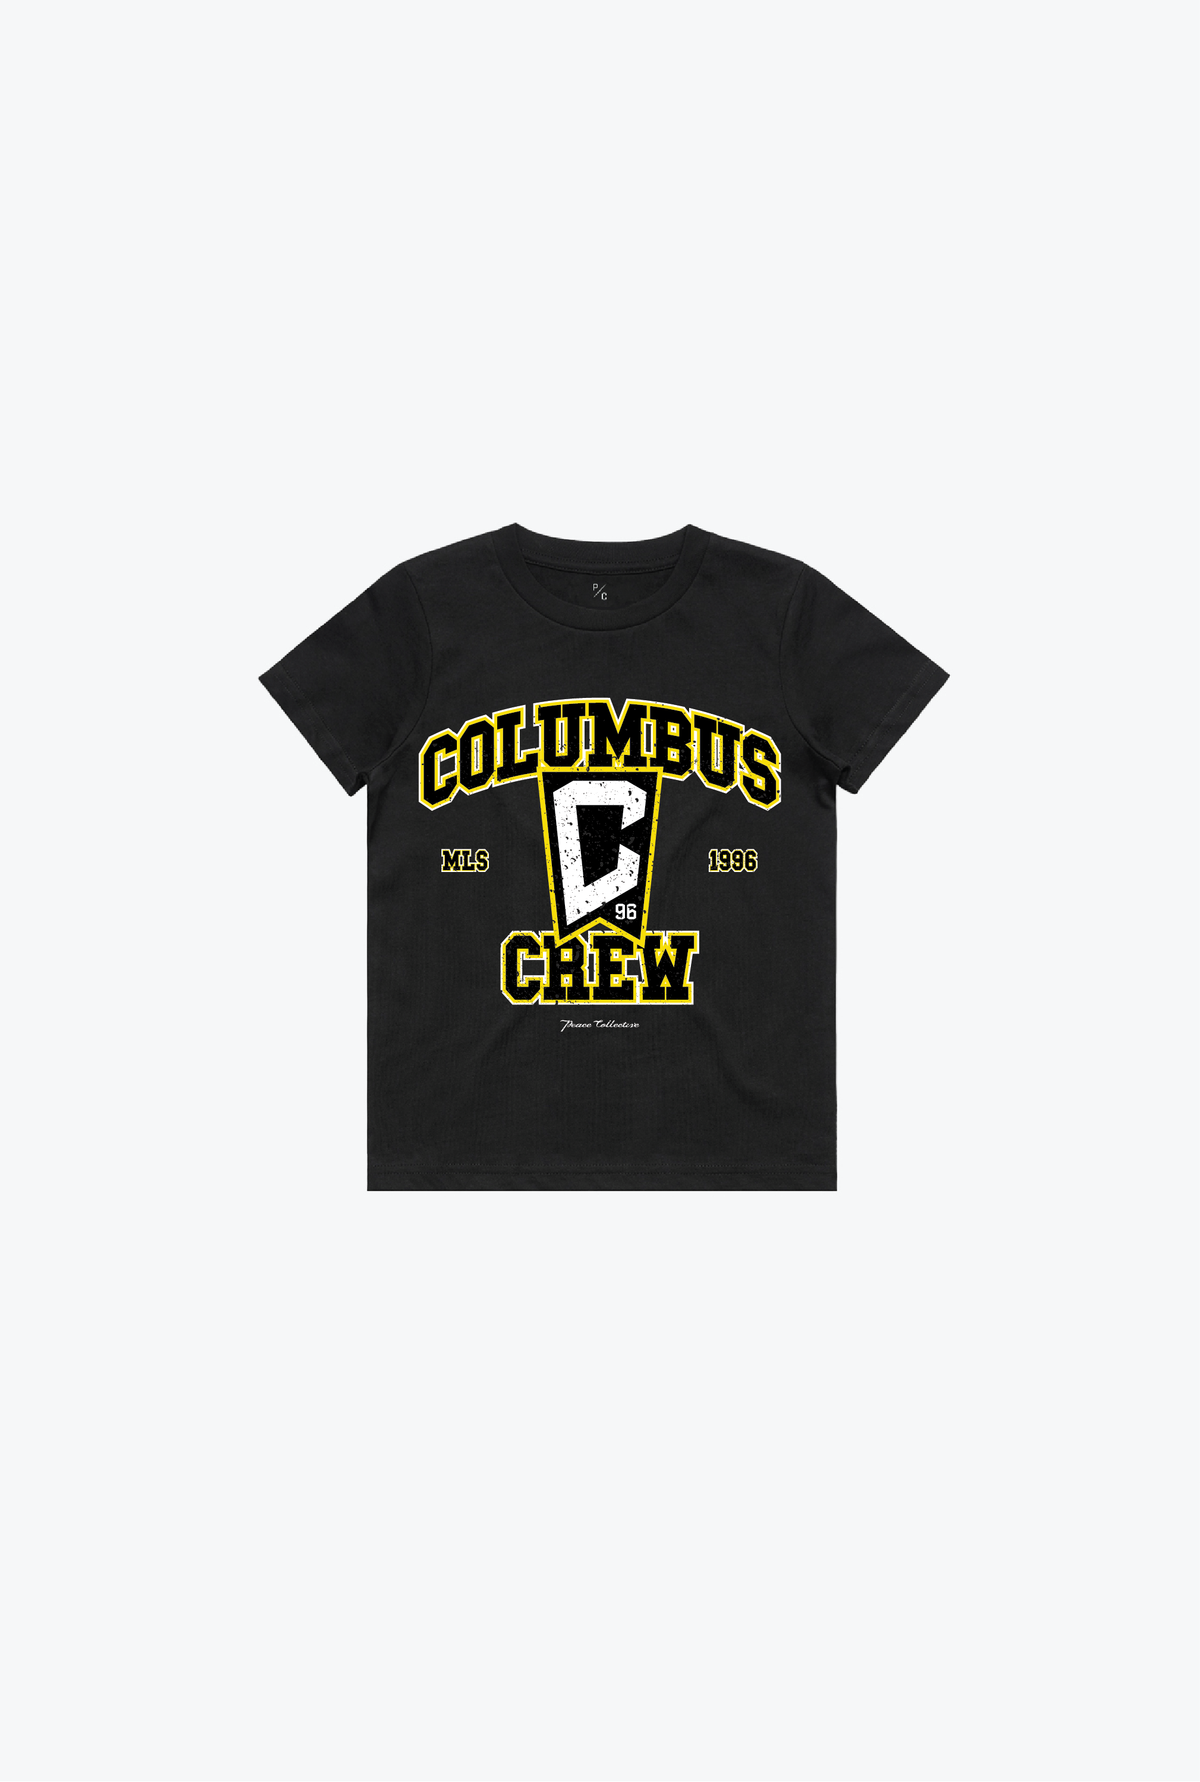 Columbus Crew Vintage Washed Kids T-Shirt - Black